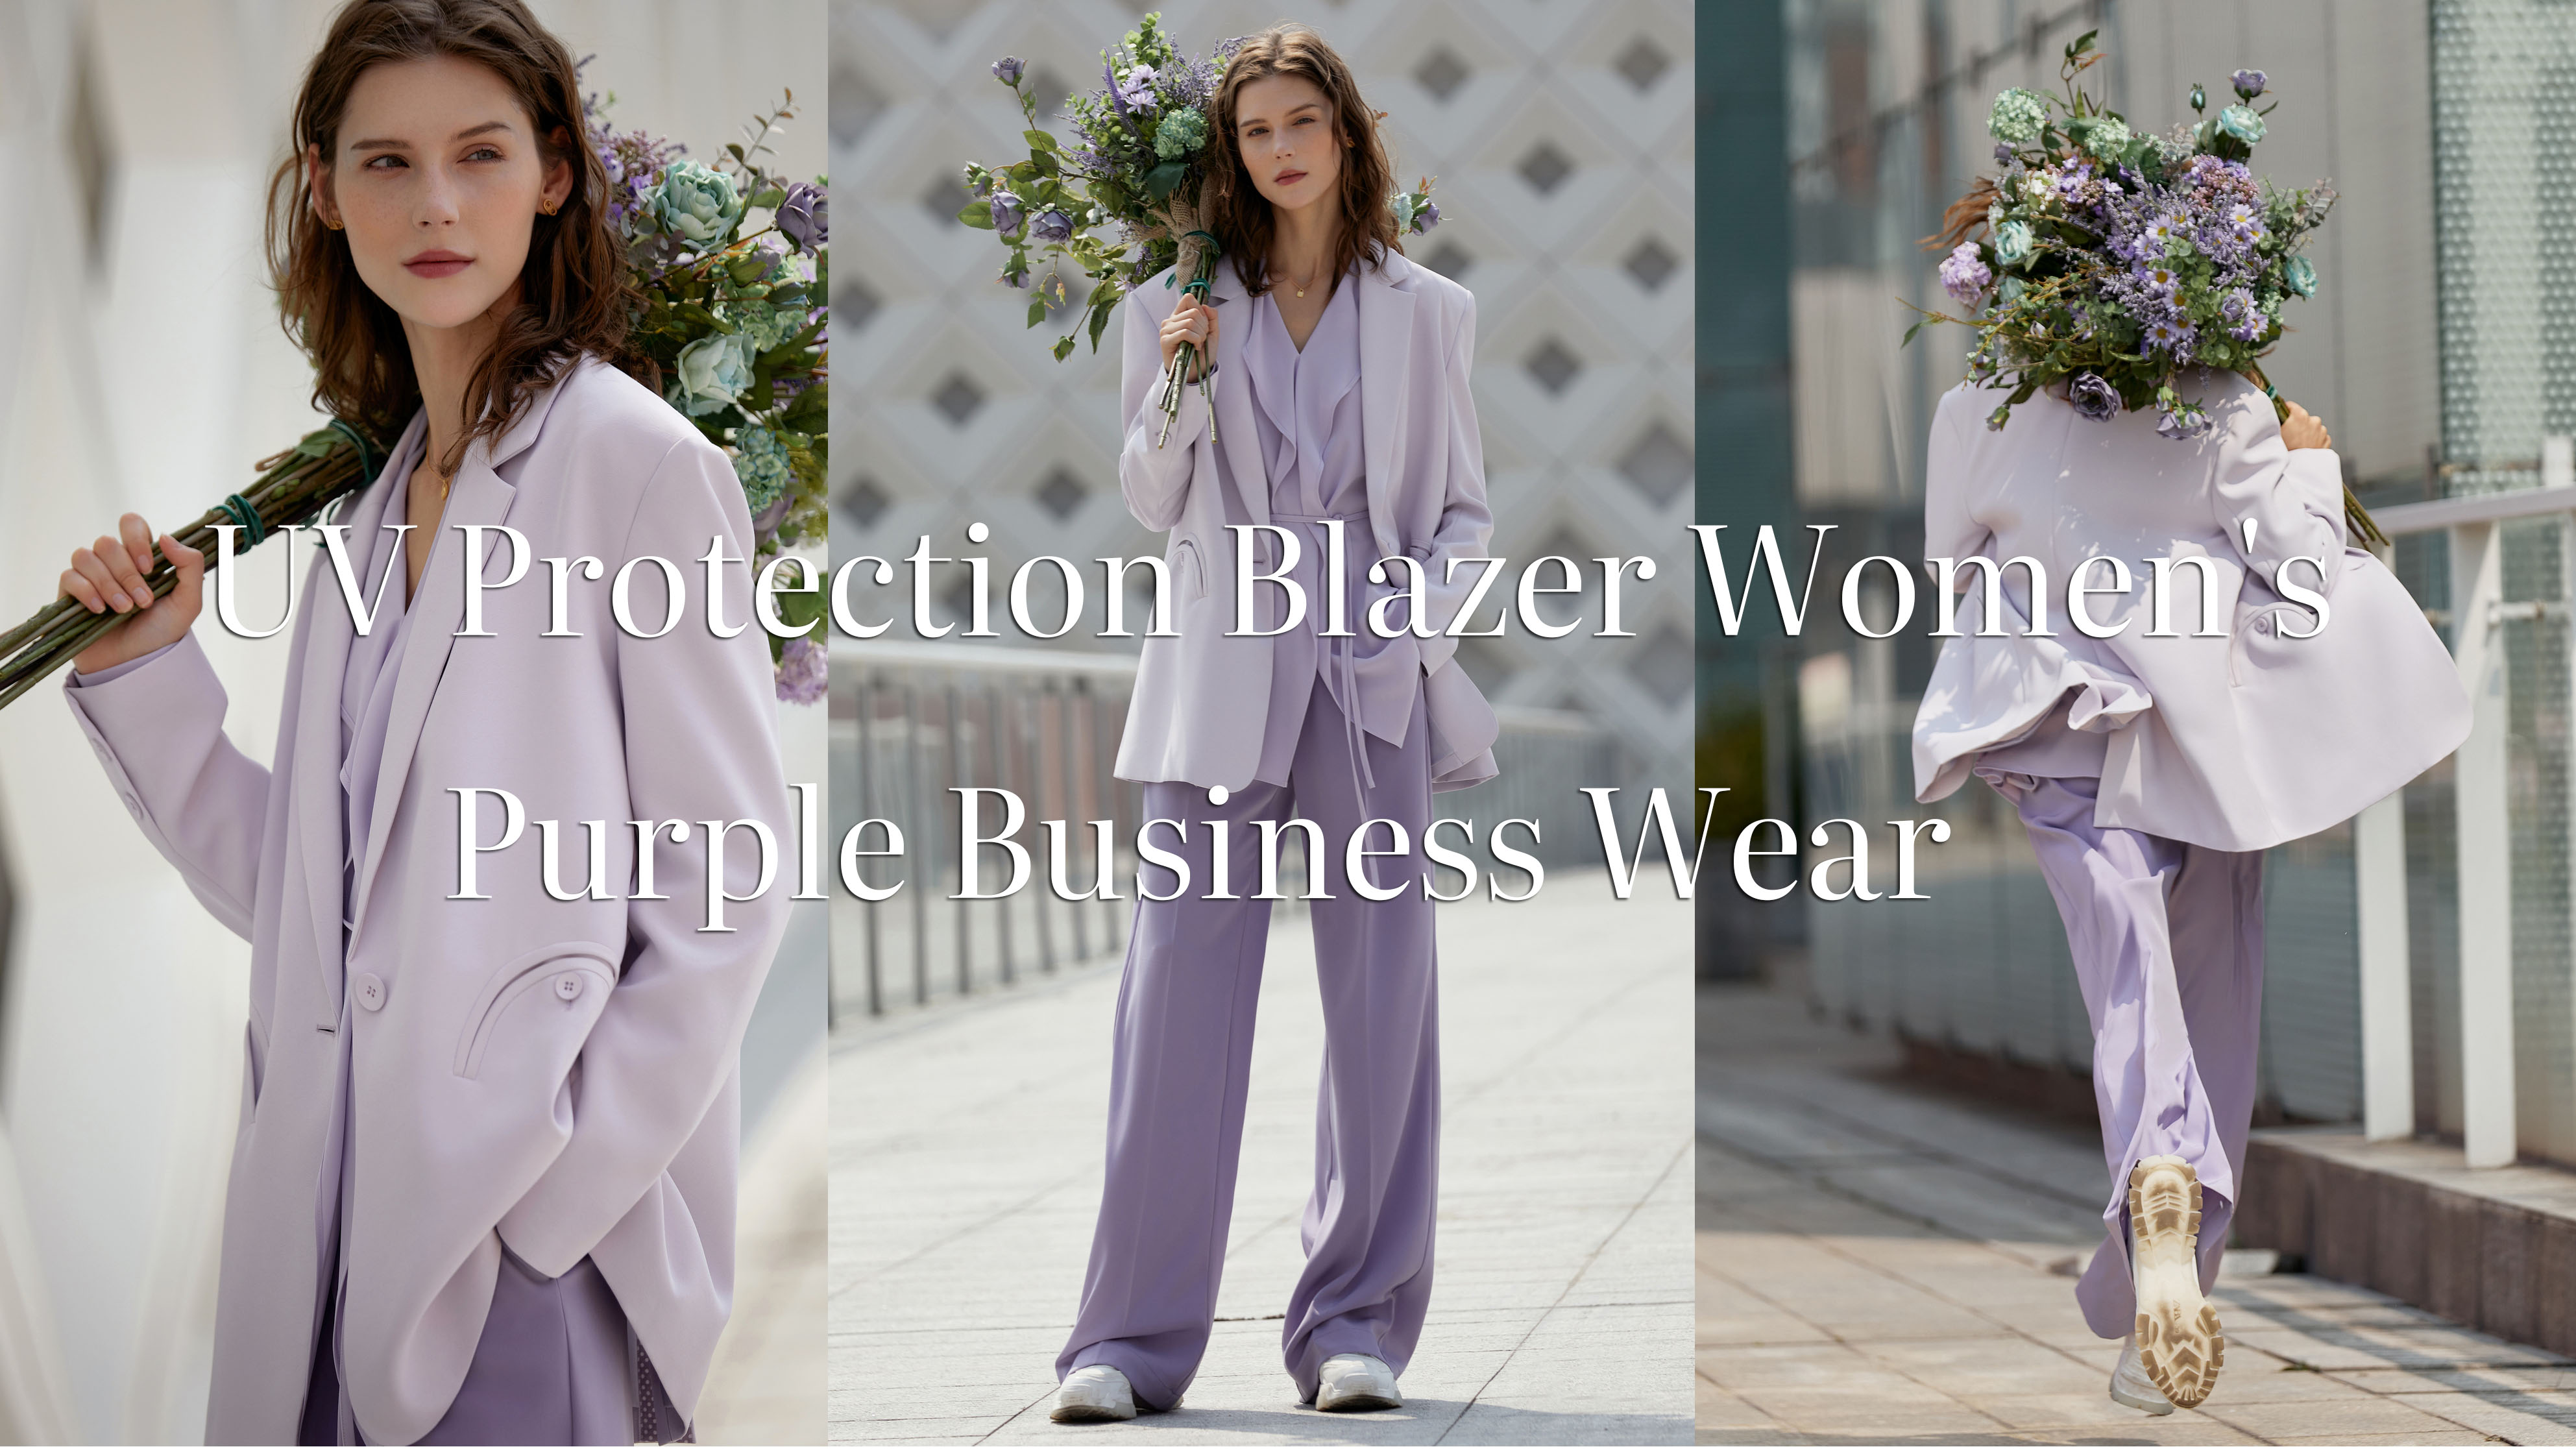 Quality UV Protection Blazer Women's Purple Business Wear Manufacturer |Auschalink